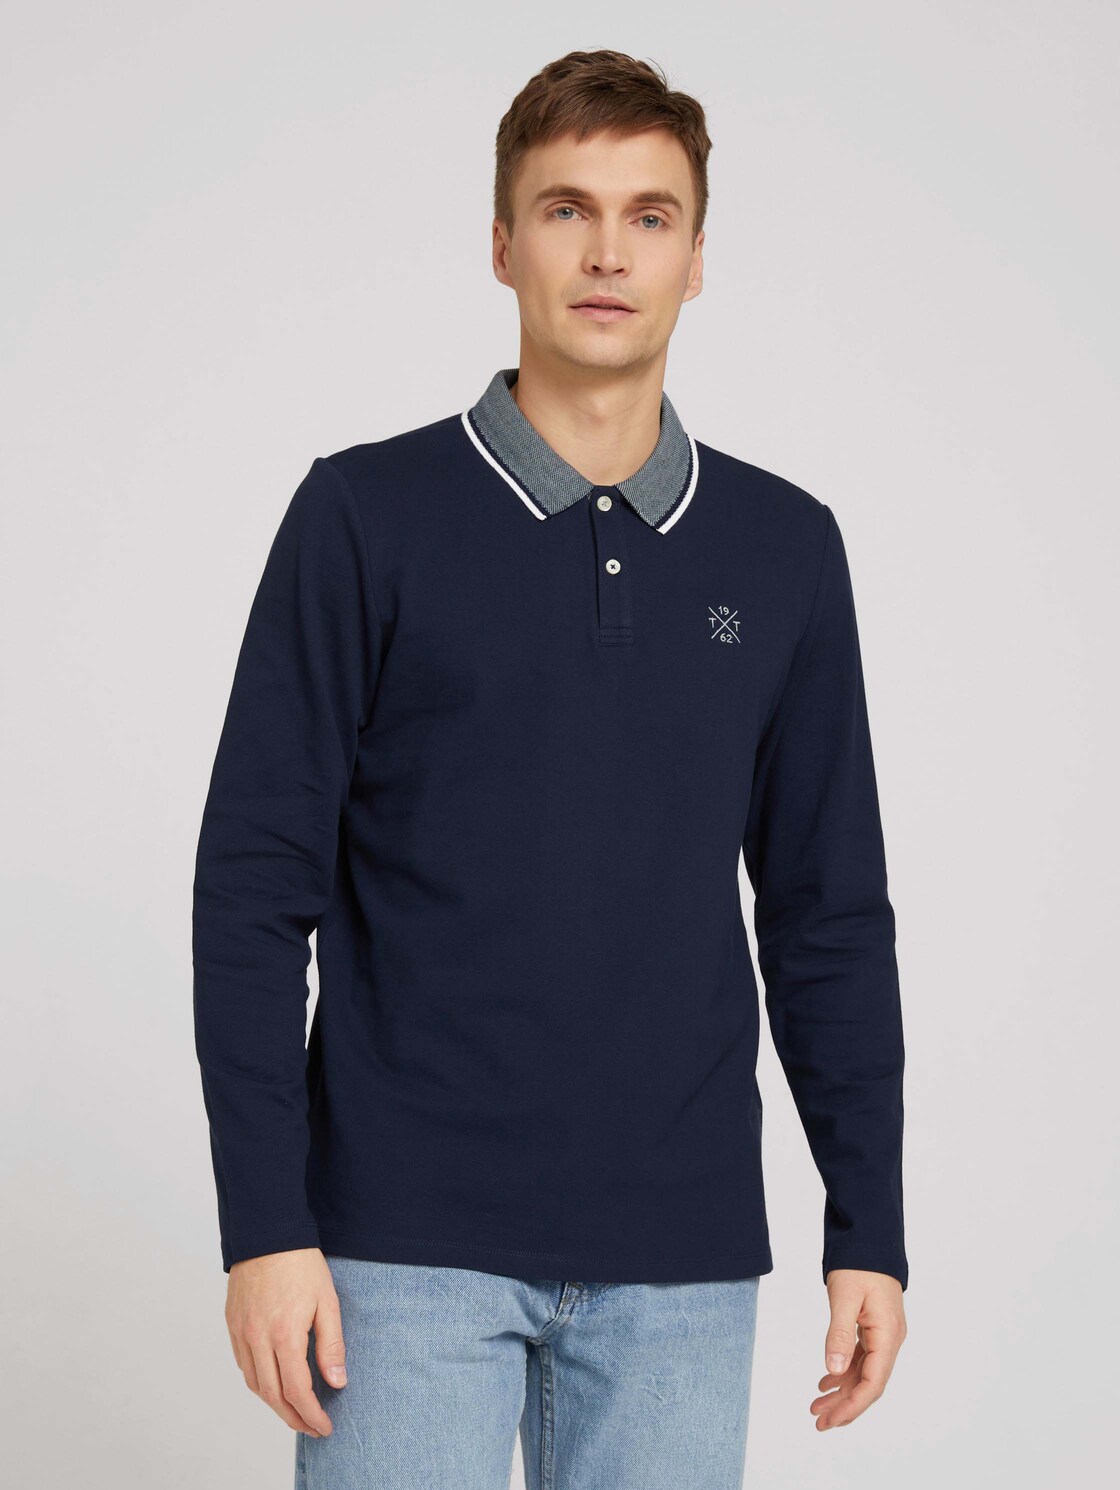 TOM TAILOR Herren Langarm Polo-Shirt, blau, Logo Print, Gr. S,